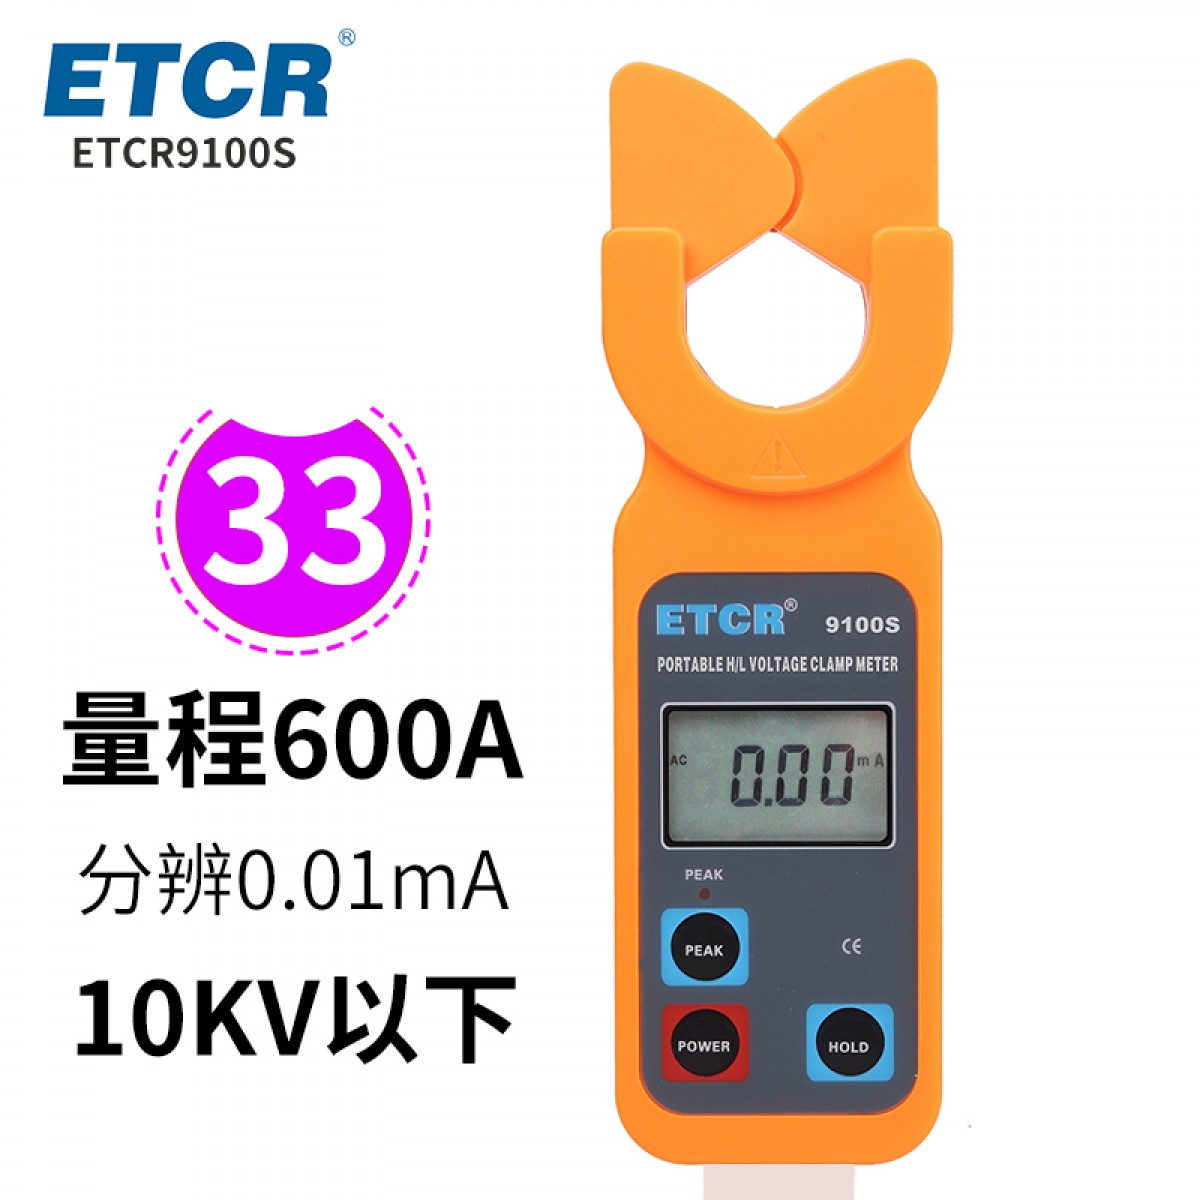 铱泰 ETCR9100S 高压钳形电流表